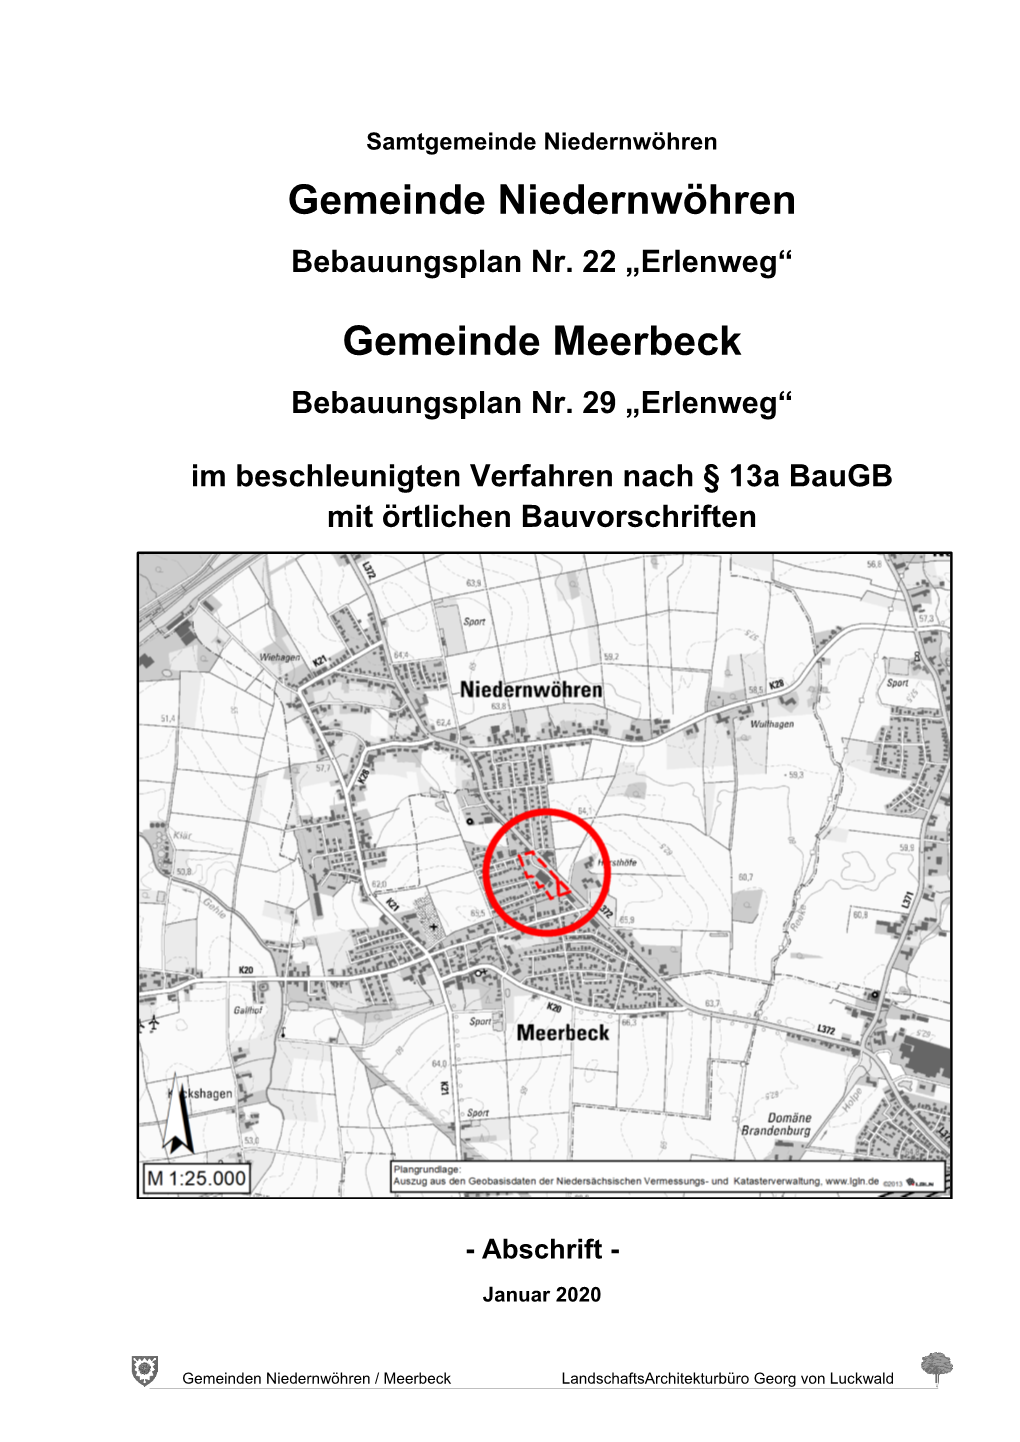 Gemeinde Niedernwöhren Gemeinde Meerbeck